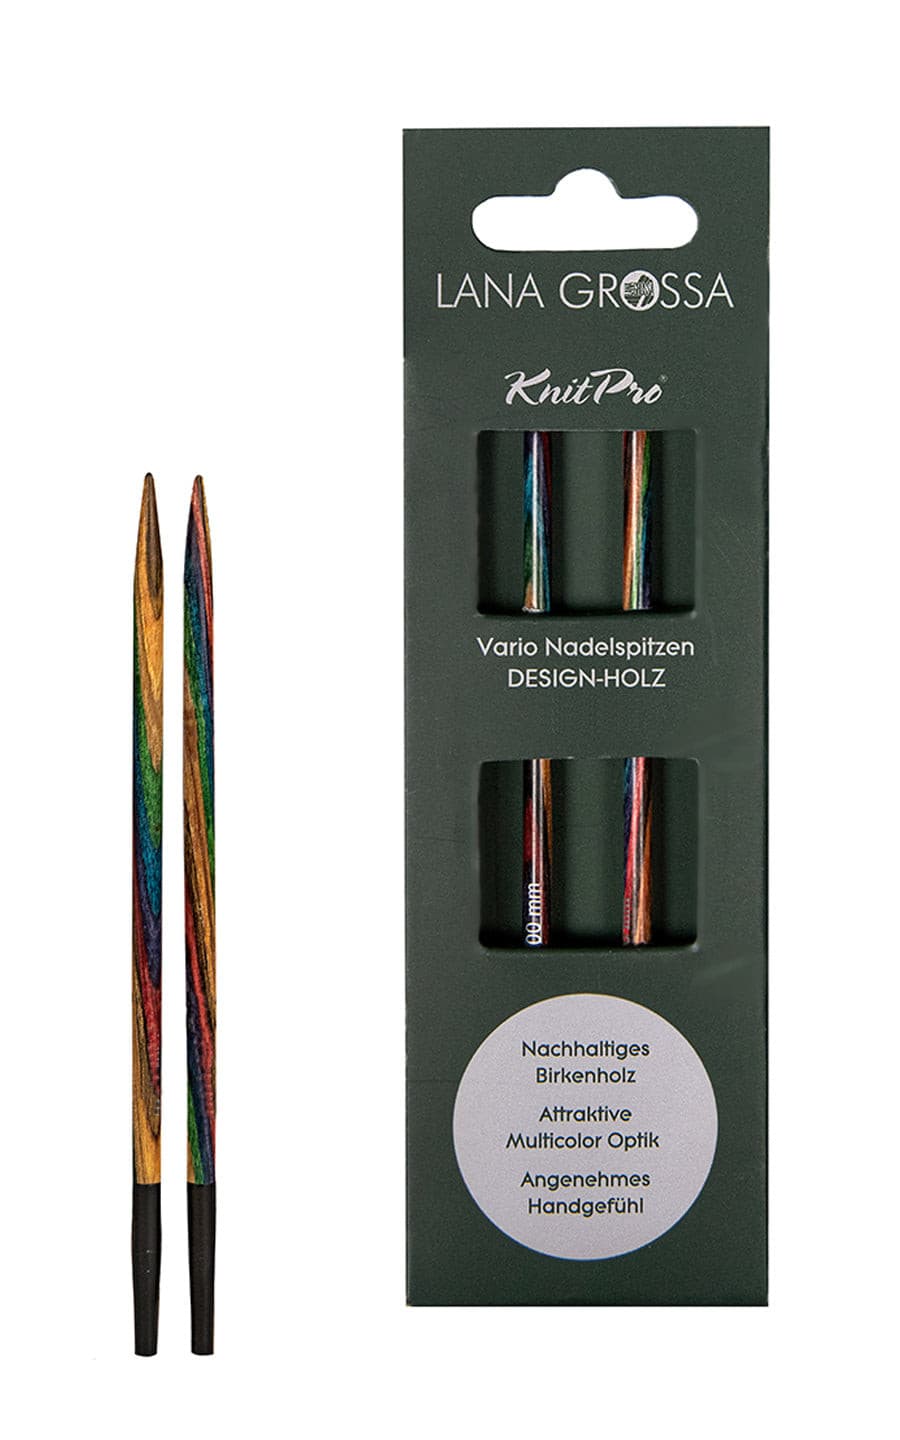 5,0 mm Nadelspitze Vario aus Holz - neue Verpackung von LANA GROSSA jetzt online kaufen bei OONIQUE